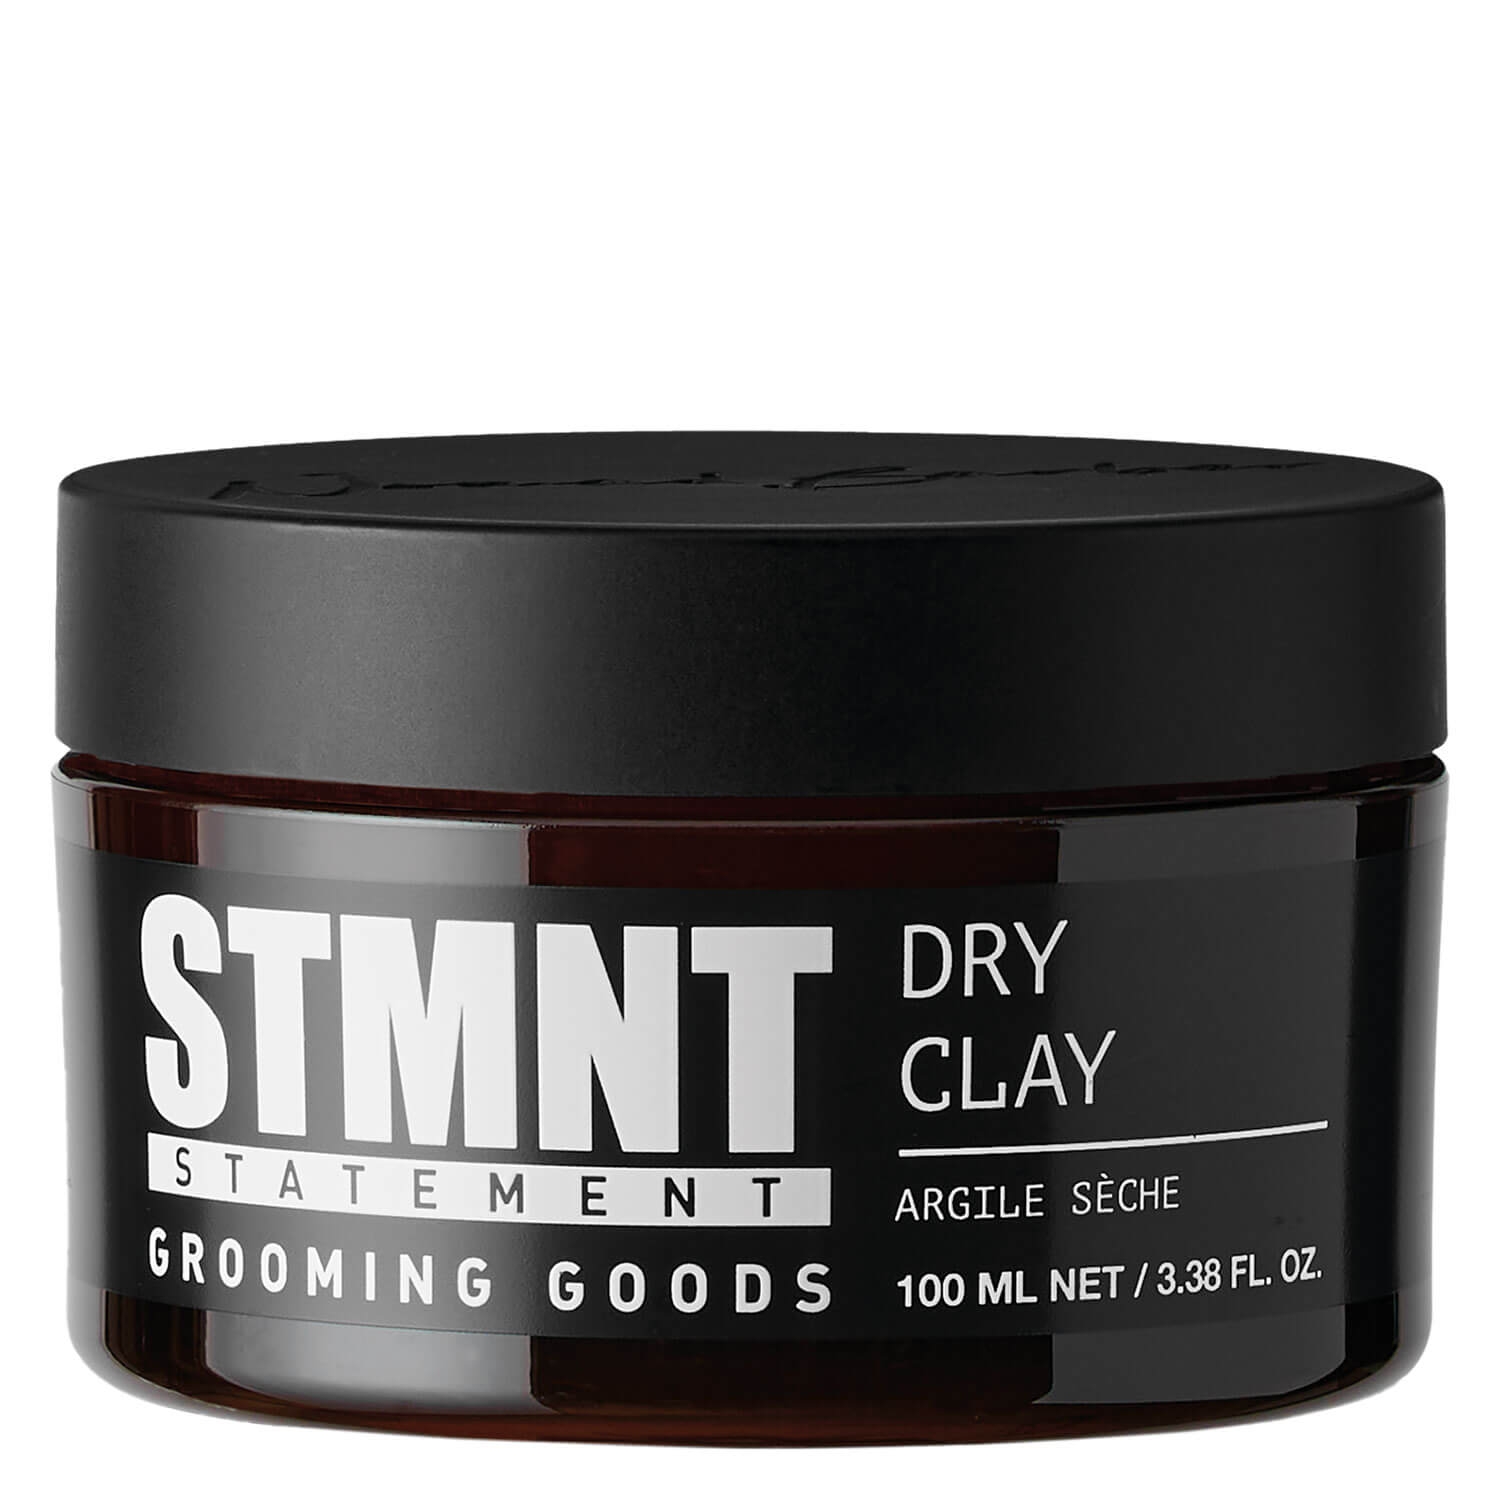 Produktbild von STMNT - Dry Clay